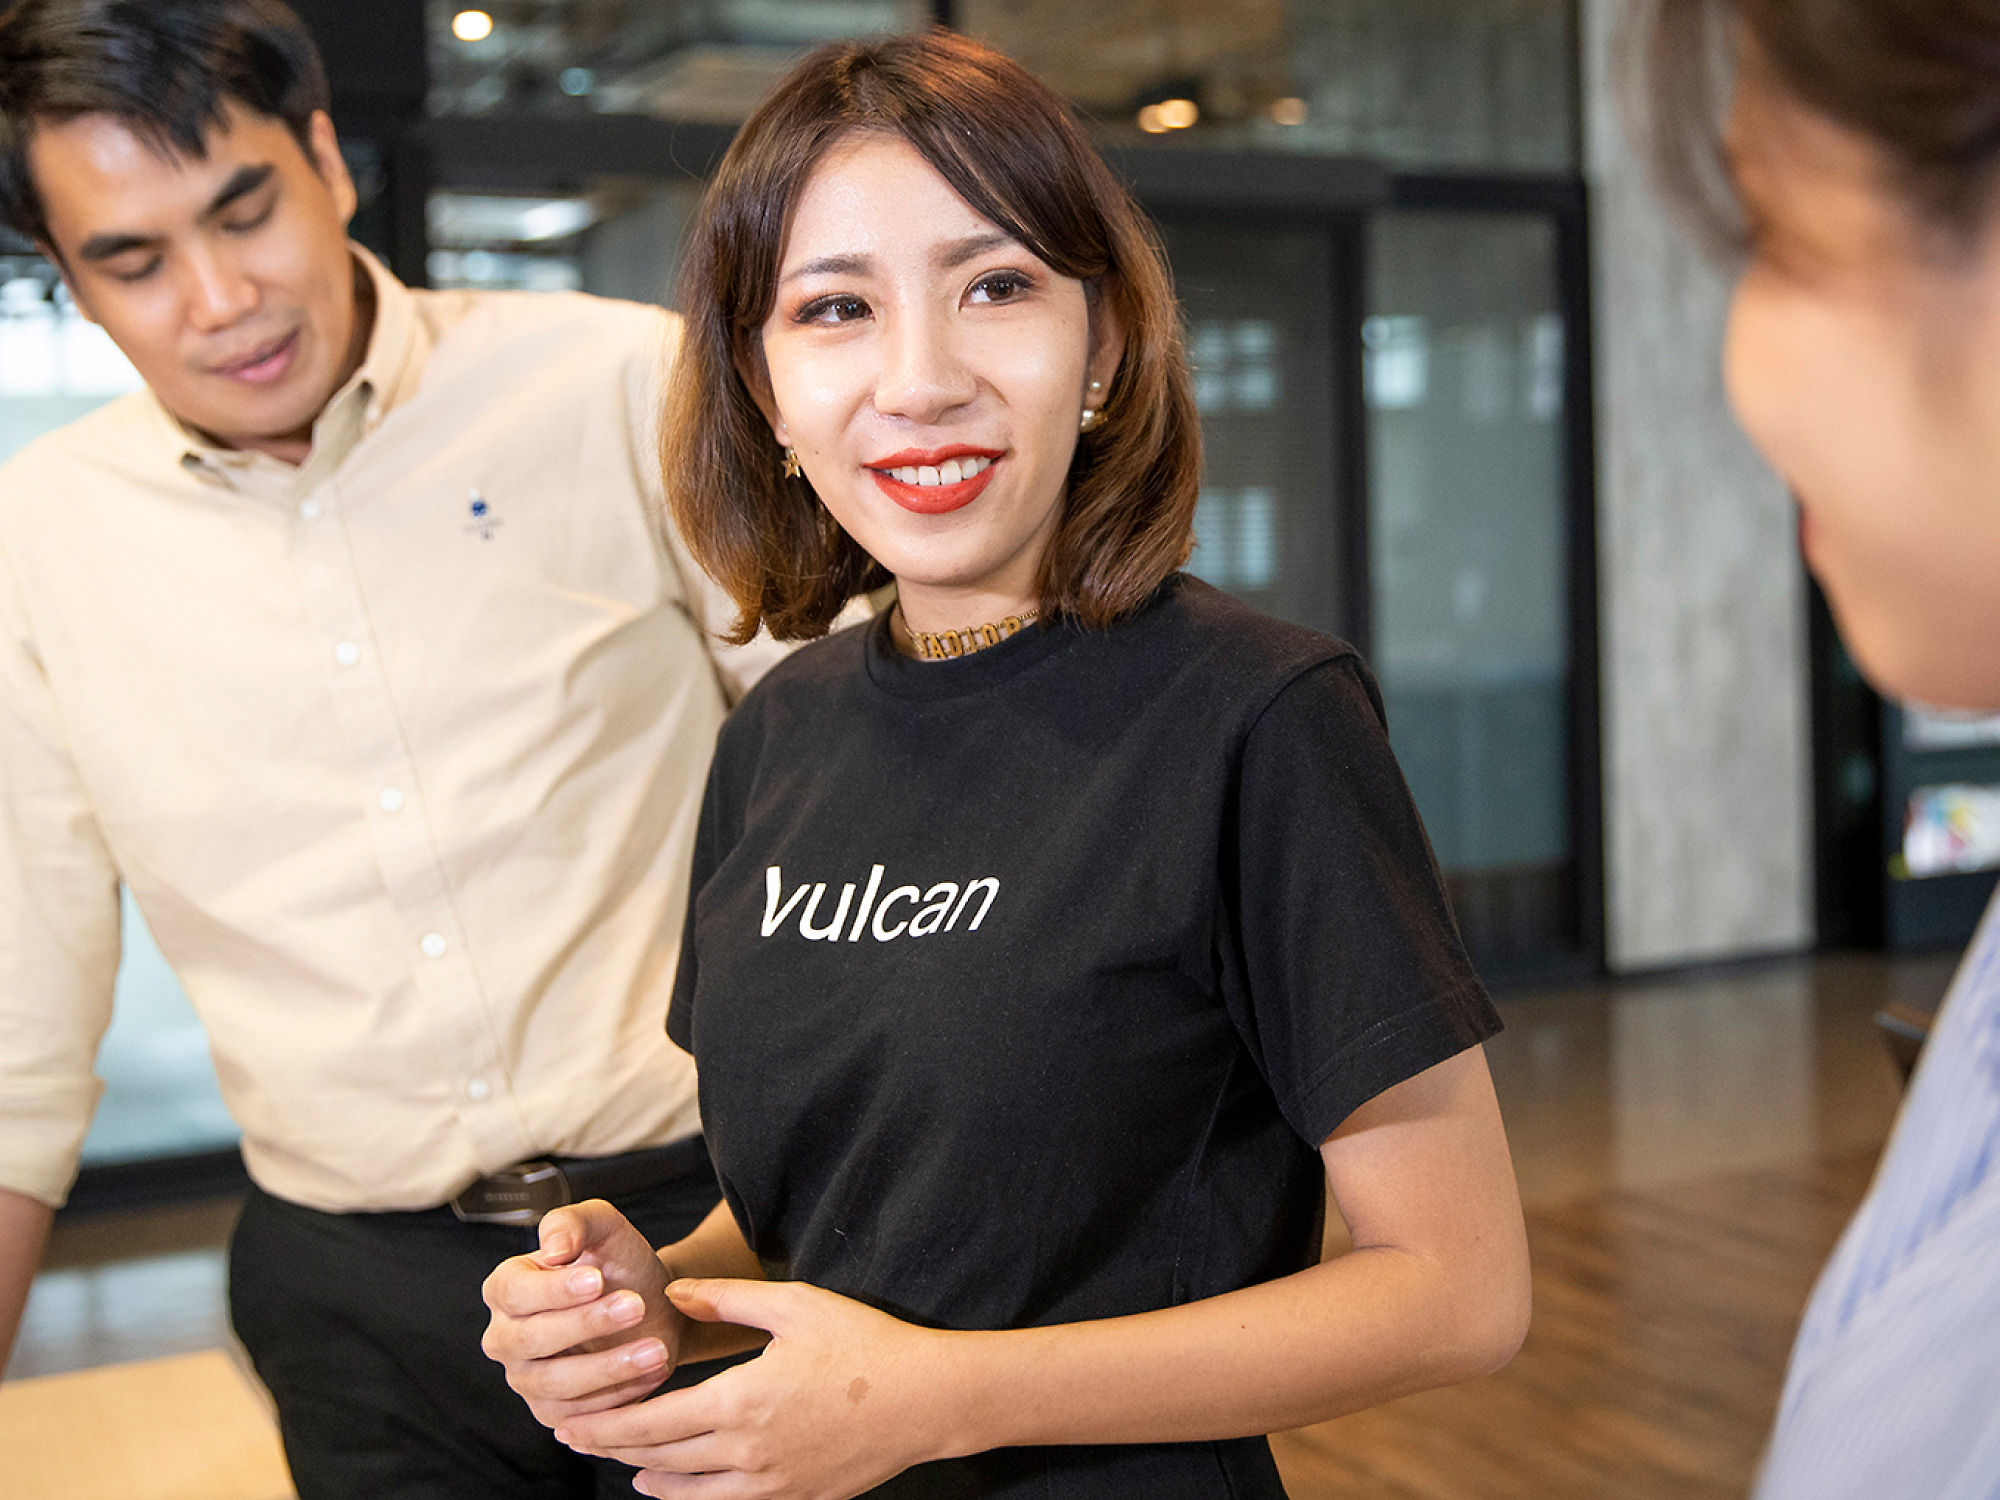 Молода жінка в чорній футболці з написом "vulcan" посміхається колезі в сучасному офісі з іншим колегою-чоловіком